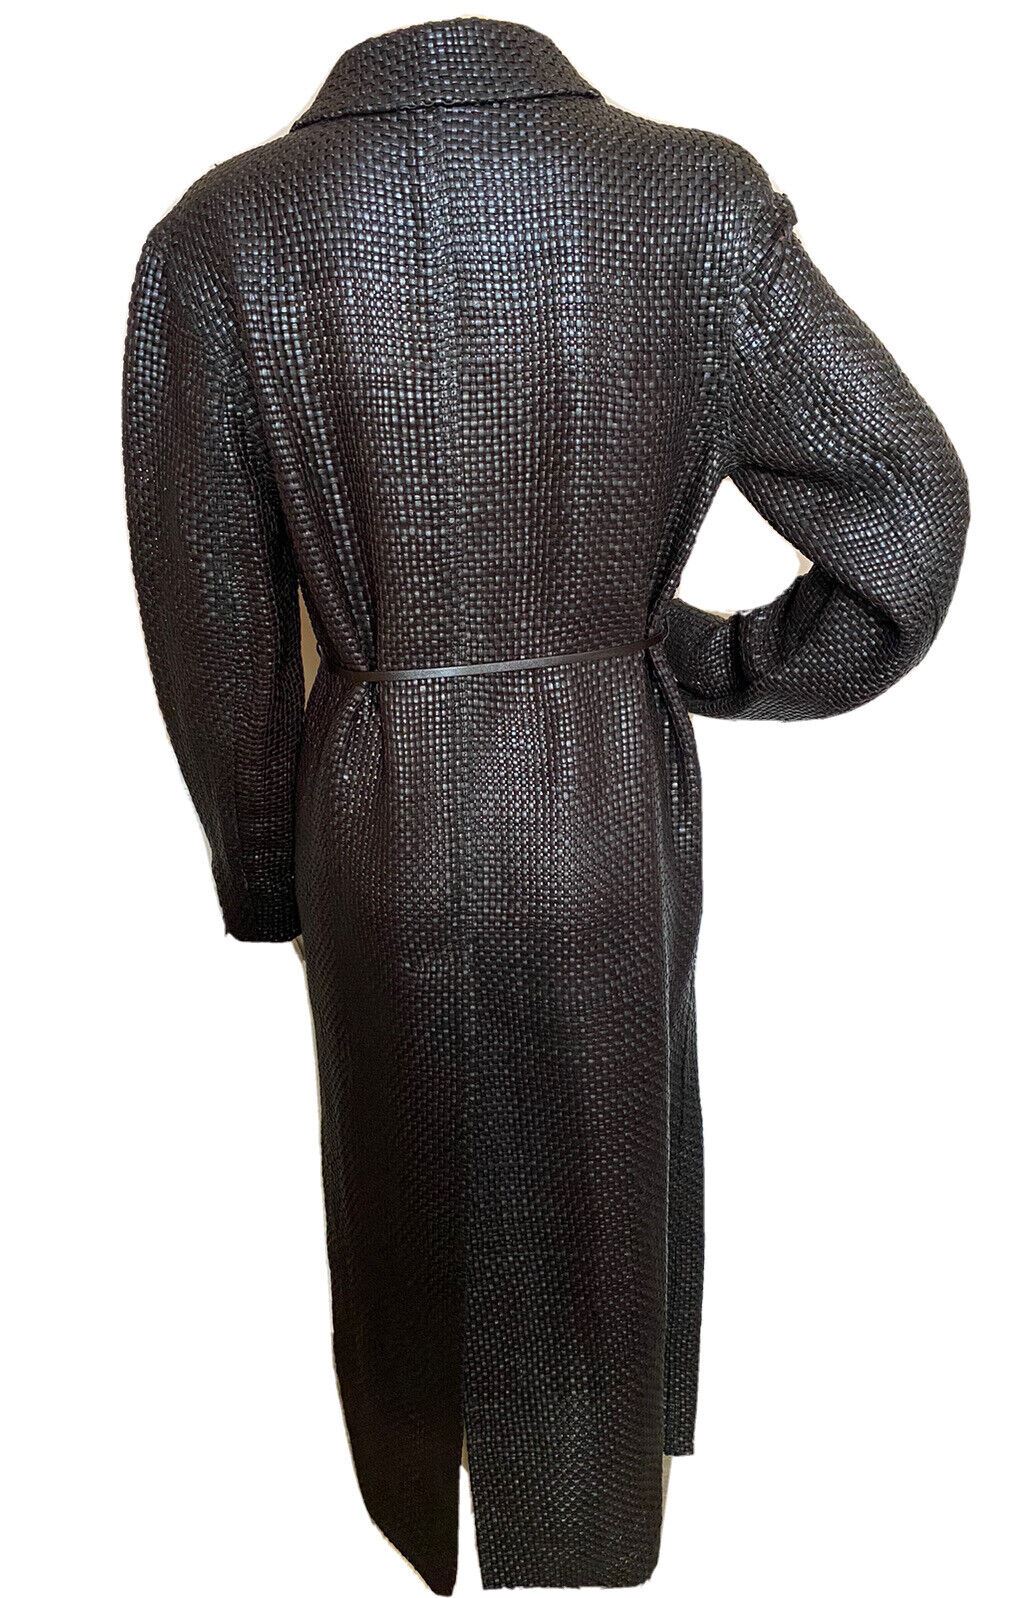 NWT $12200 Bottega Veneta Женское кожаное пальто Intrecciato шоколадного цвета 604525 